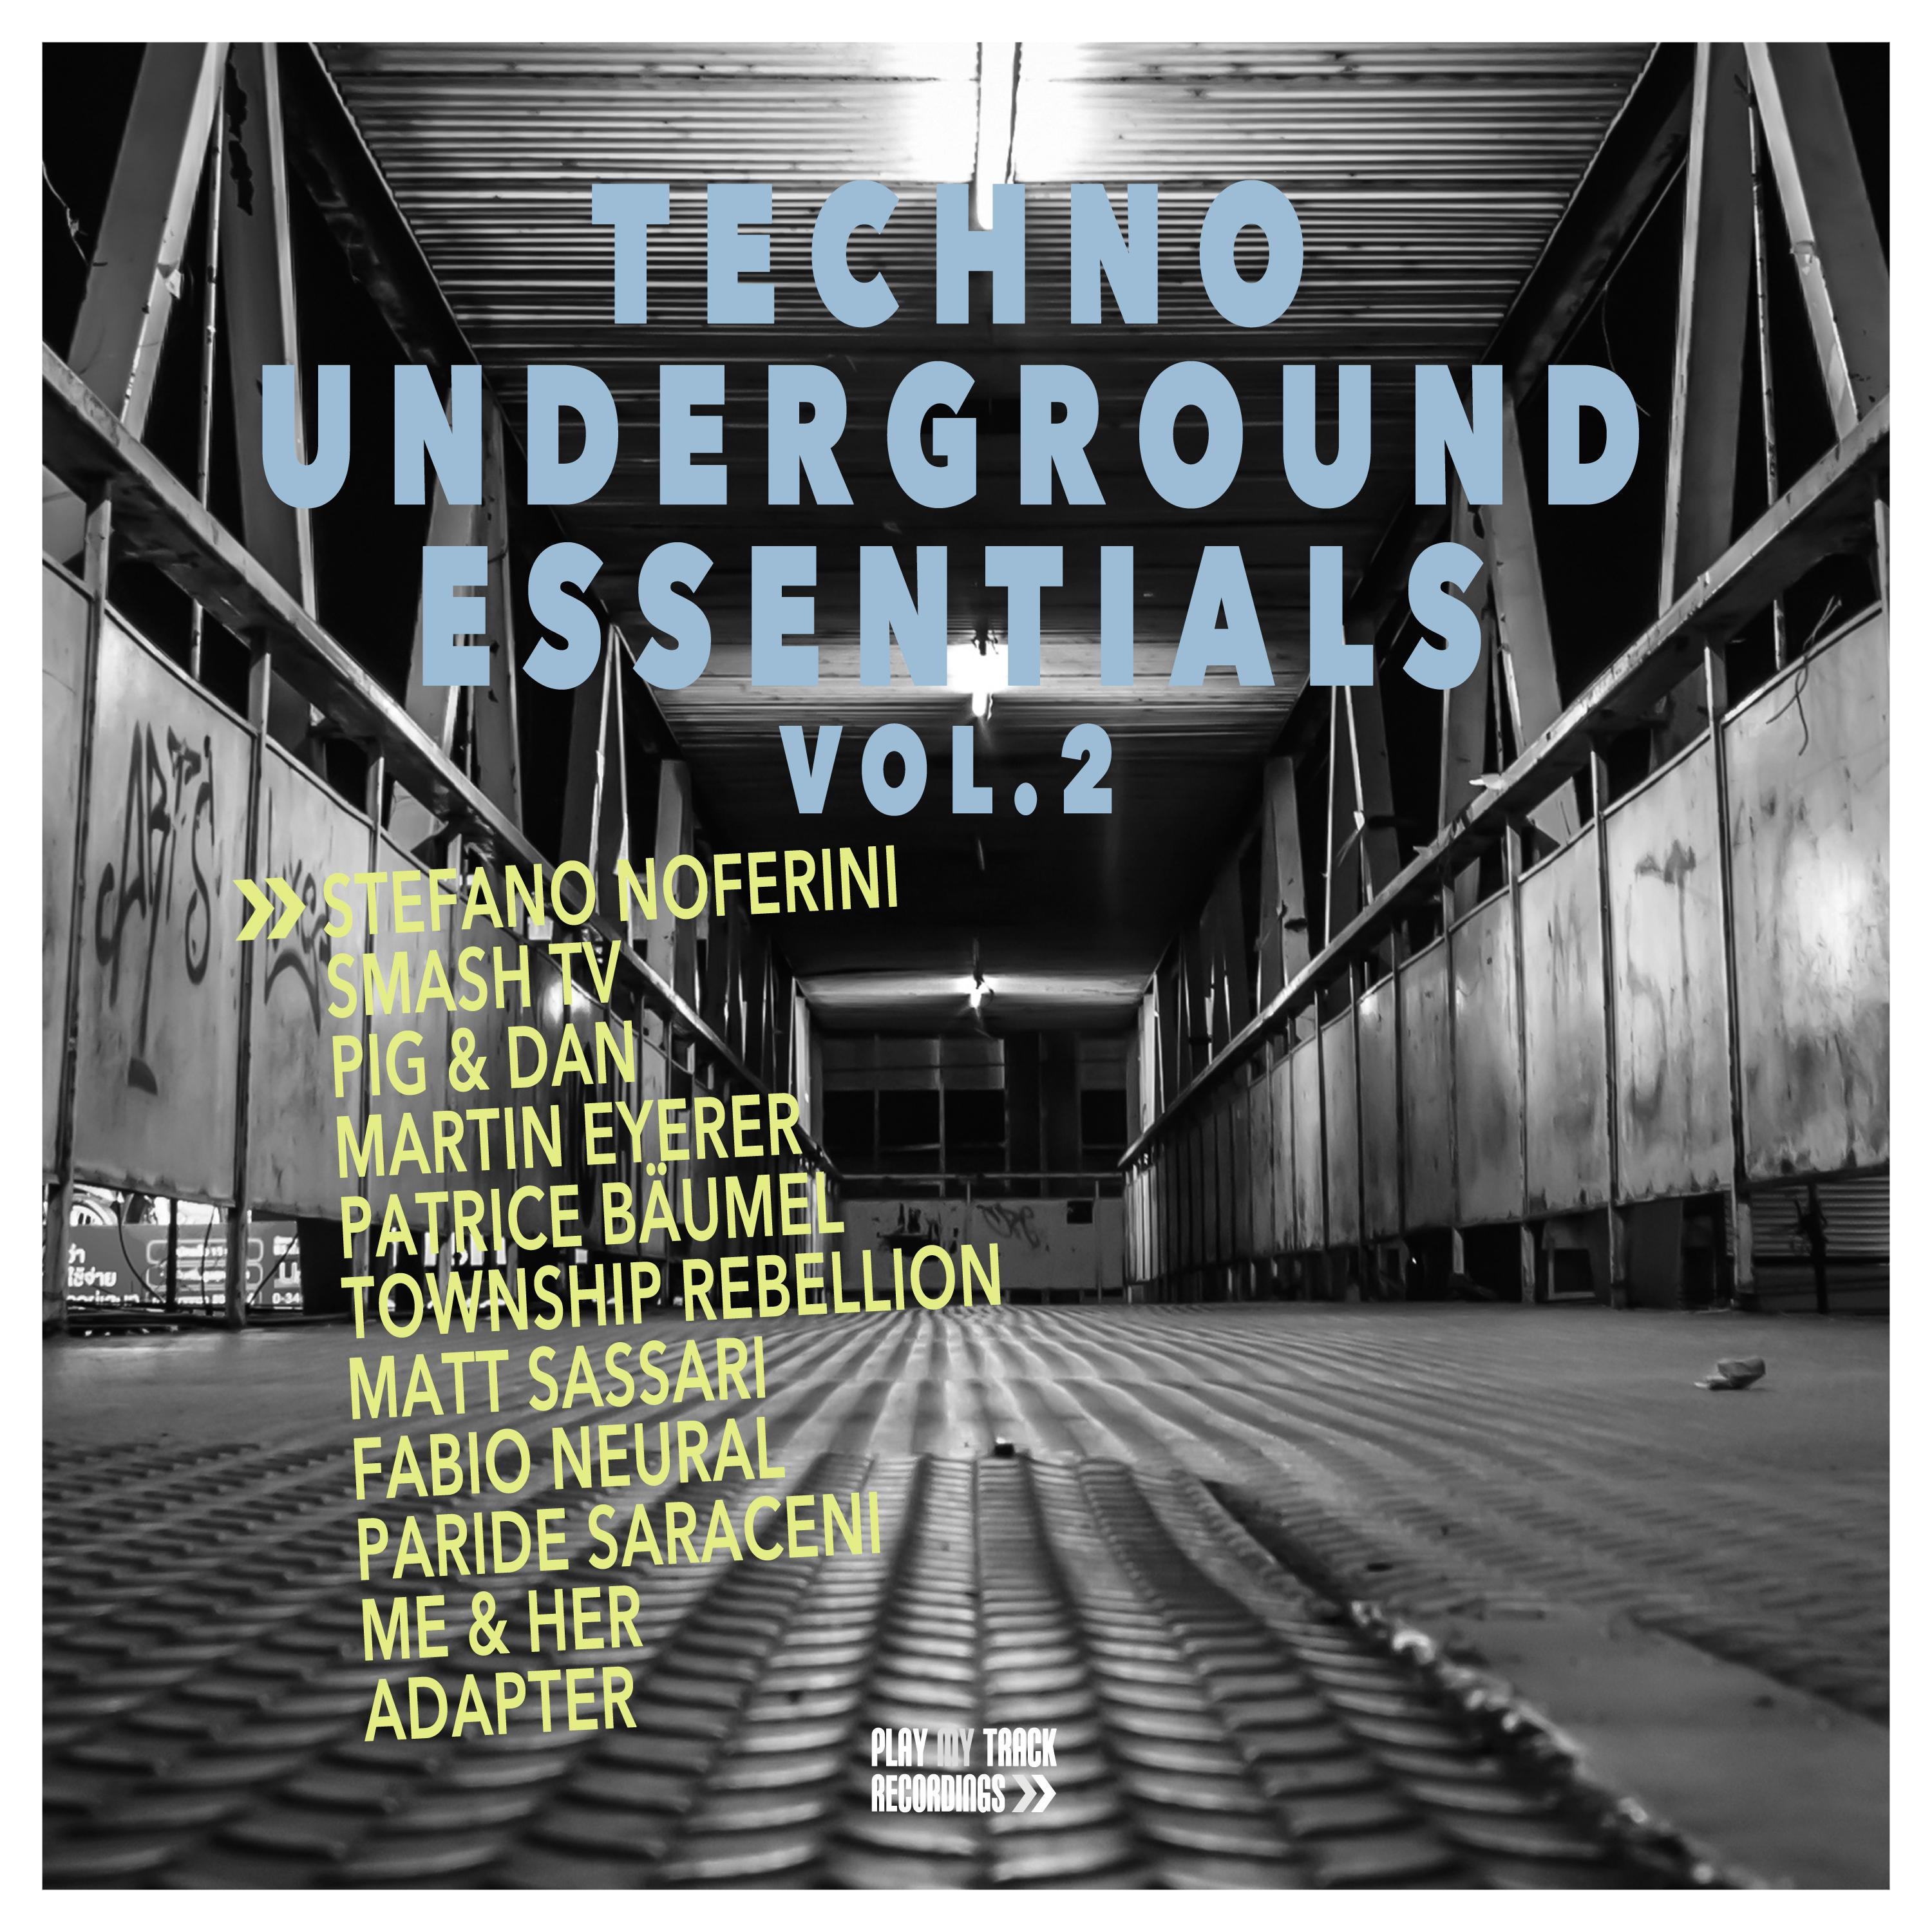 Techno Underground Essentials, Vol. 2